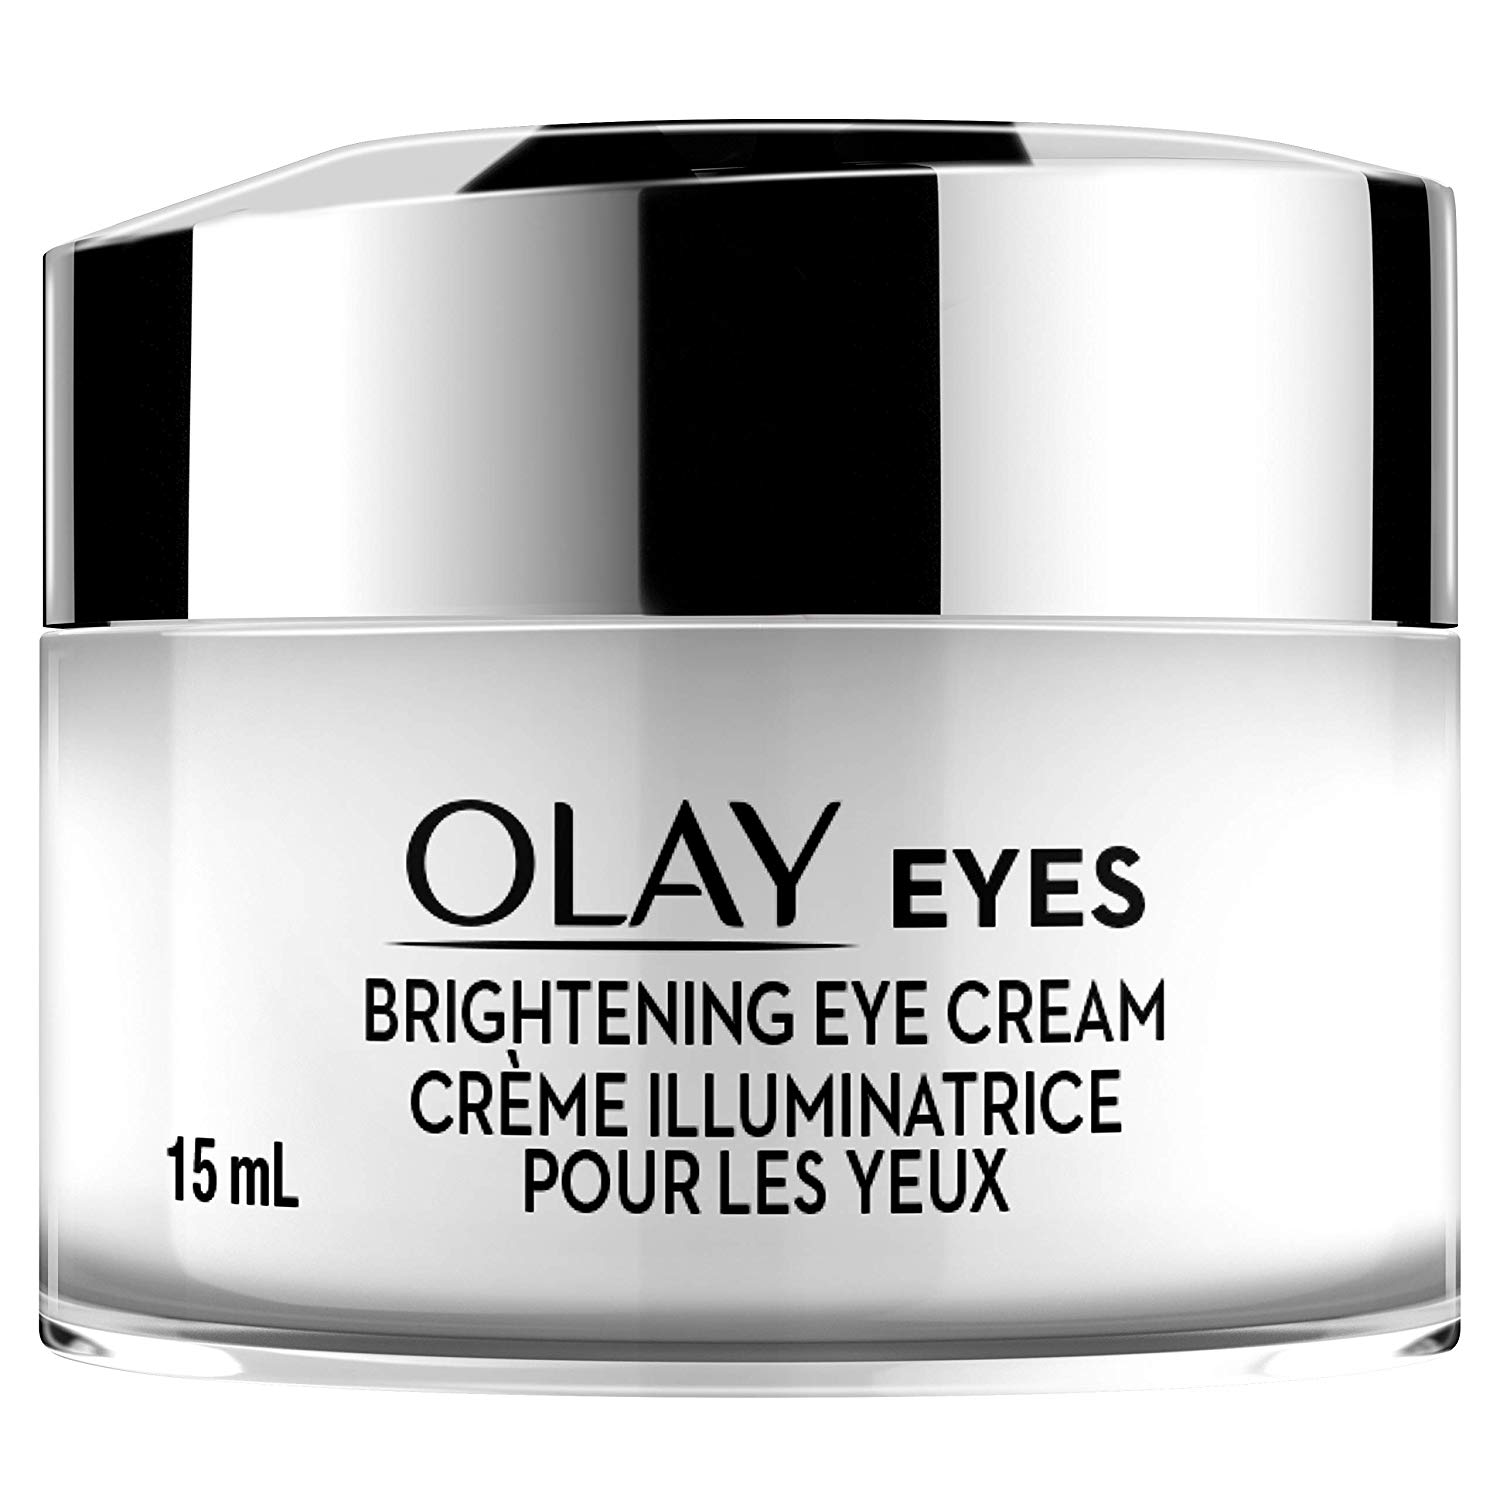  Olay Eyes Brightening Eye Cream